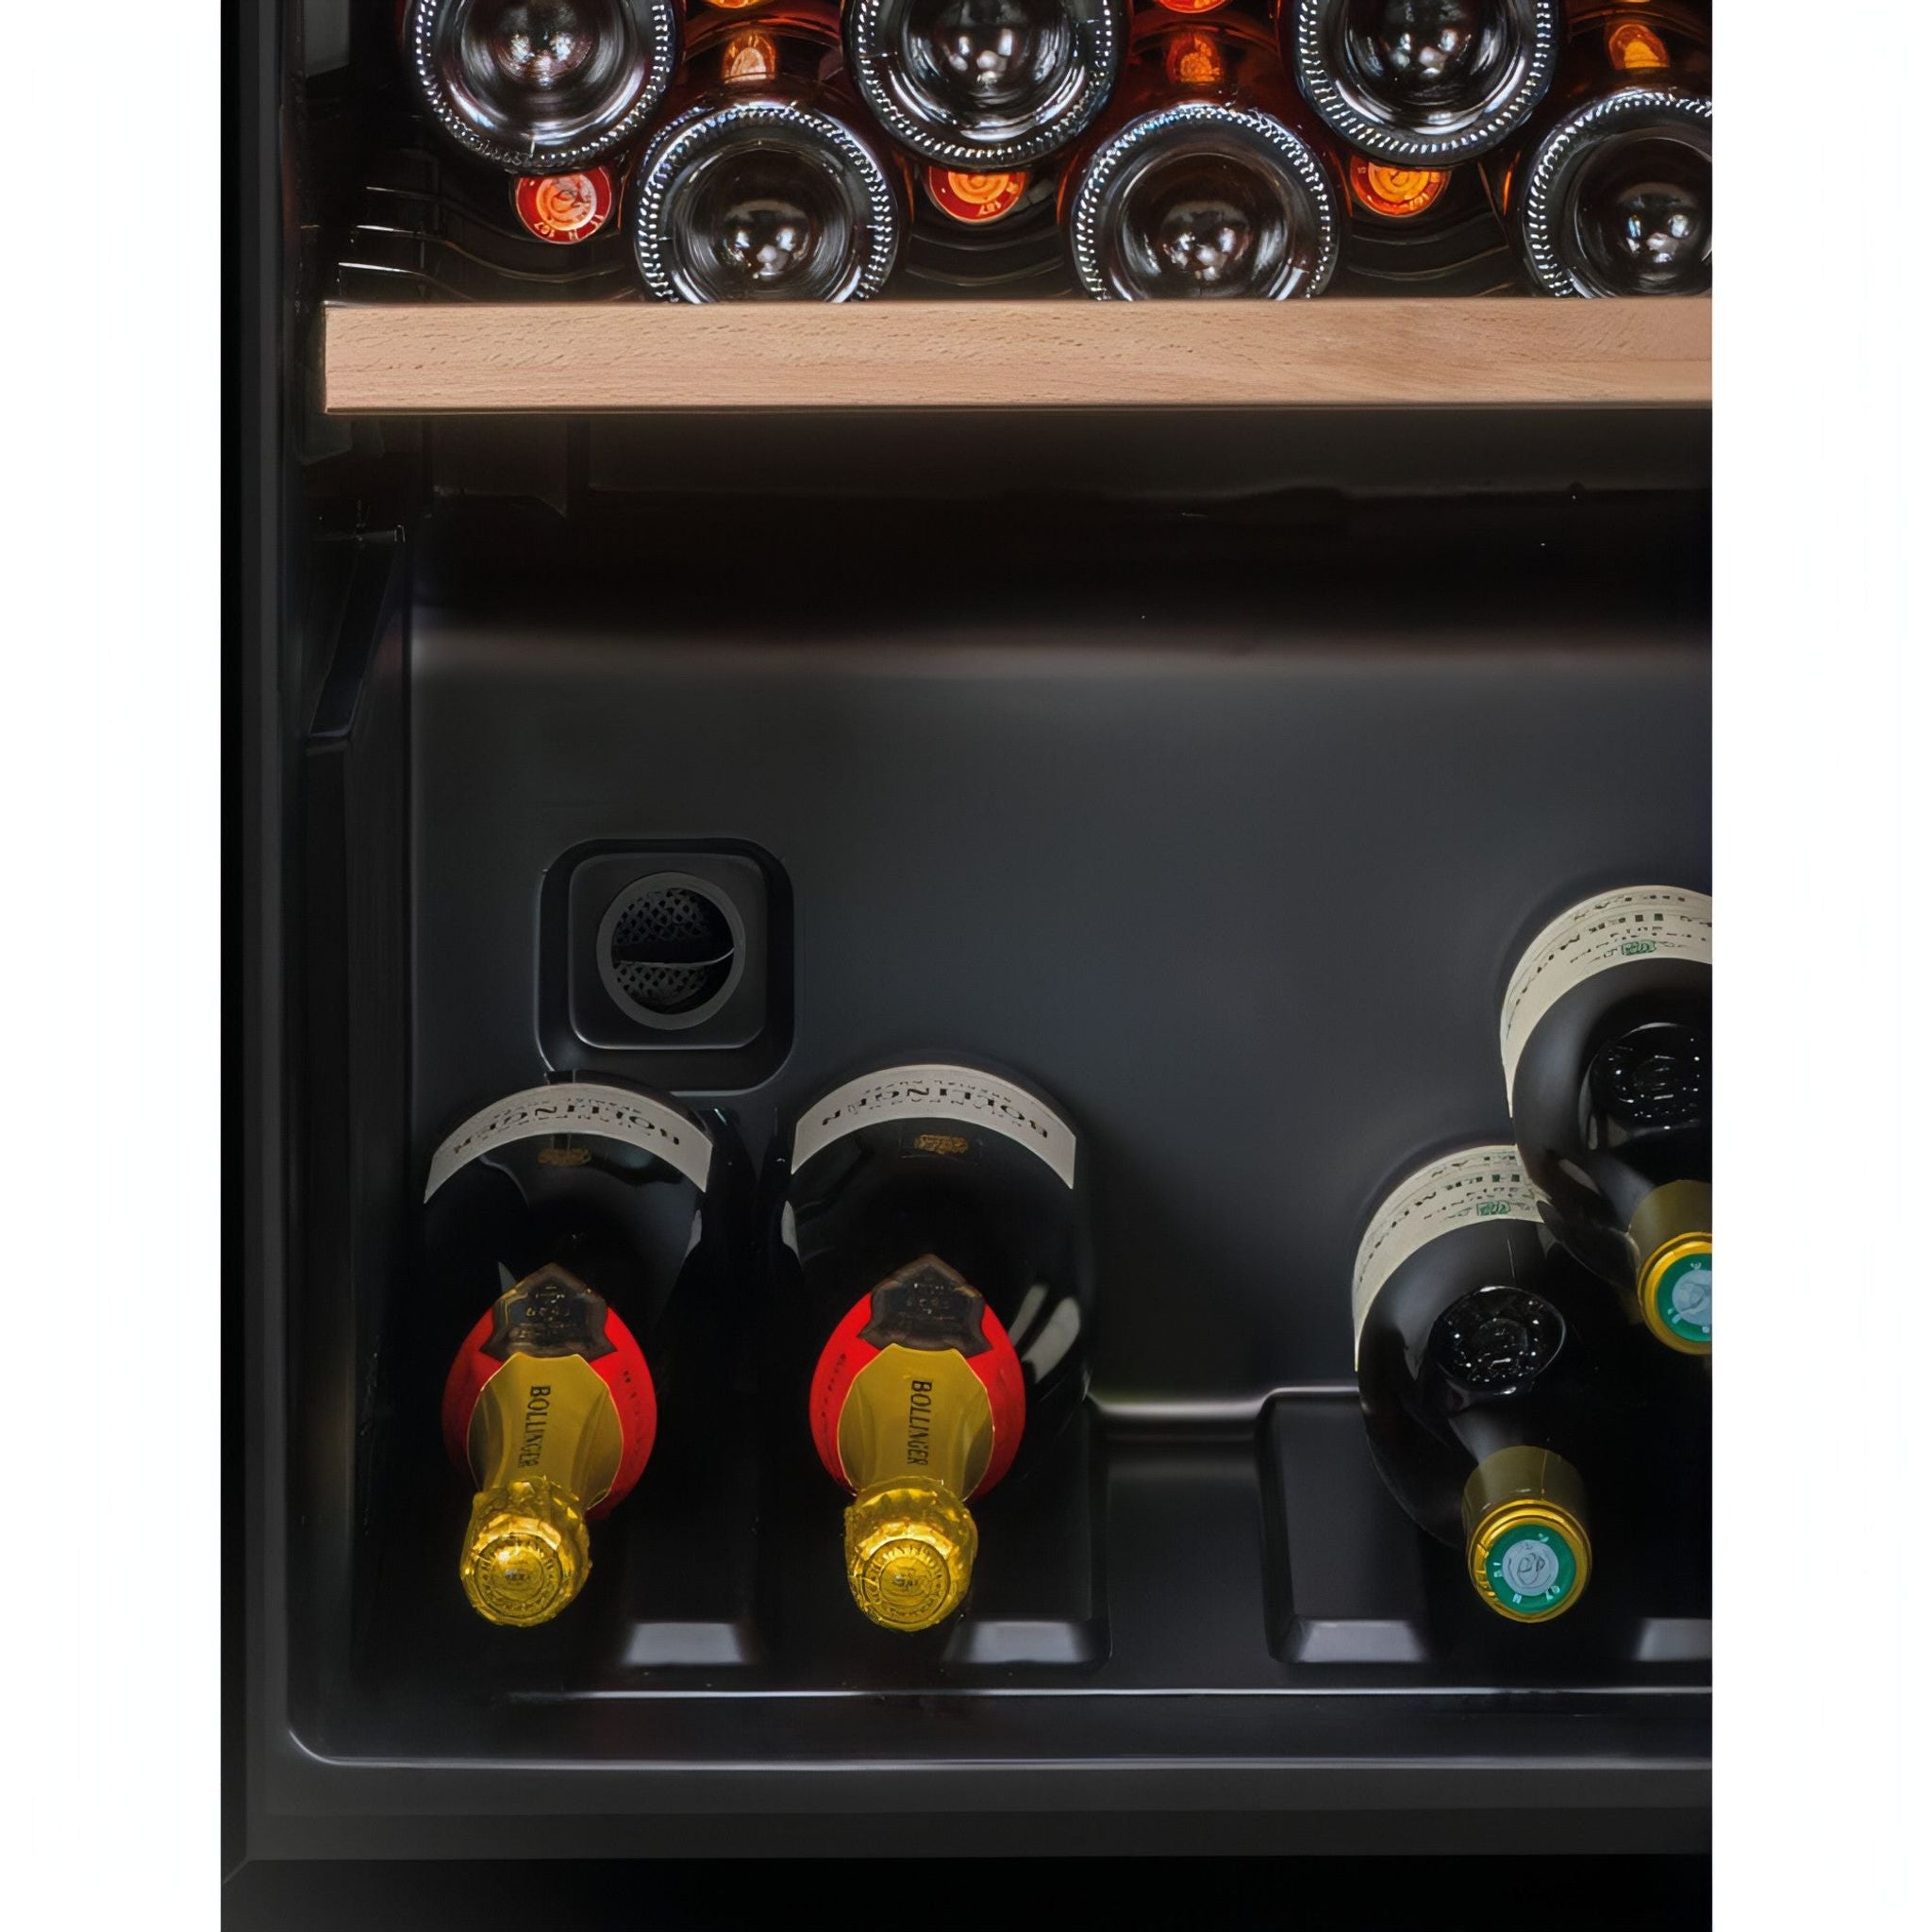 La Sommeliere - 147 Bottle - Freestanding Wine Cabinet - CTVNE147